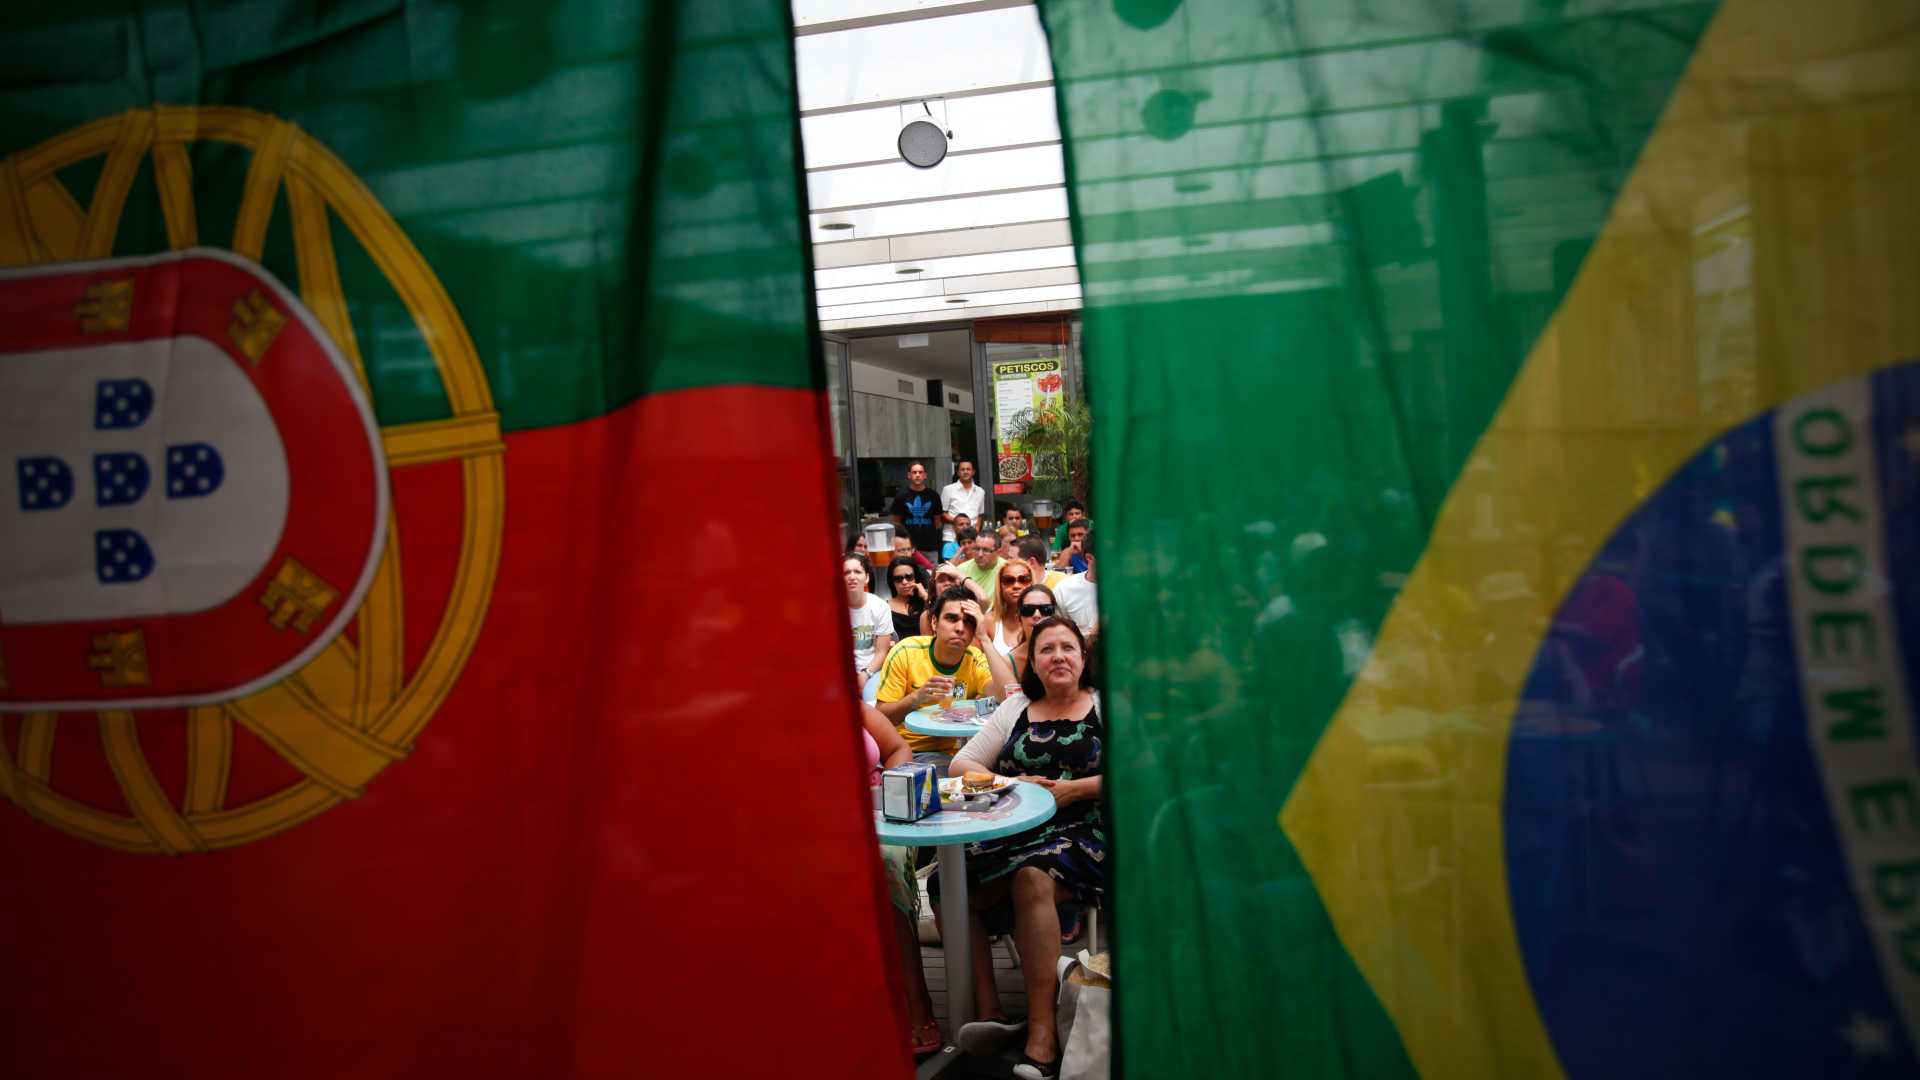 Adeptos brasileiros assistem à partida entre as selecções de Portugal e do Brasil num bar na Costa de Caparica, 25 junho 2010 (JOSÉ SENA GOULÃO / LUSA)